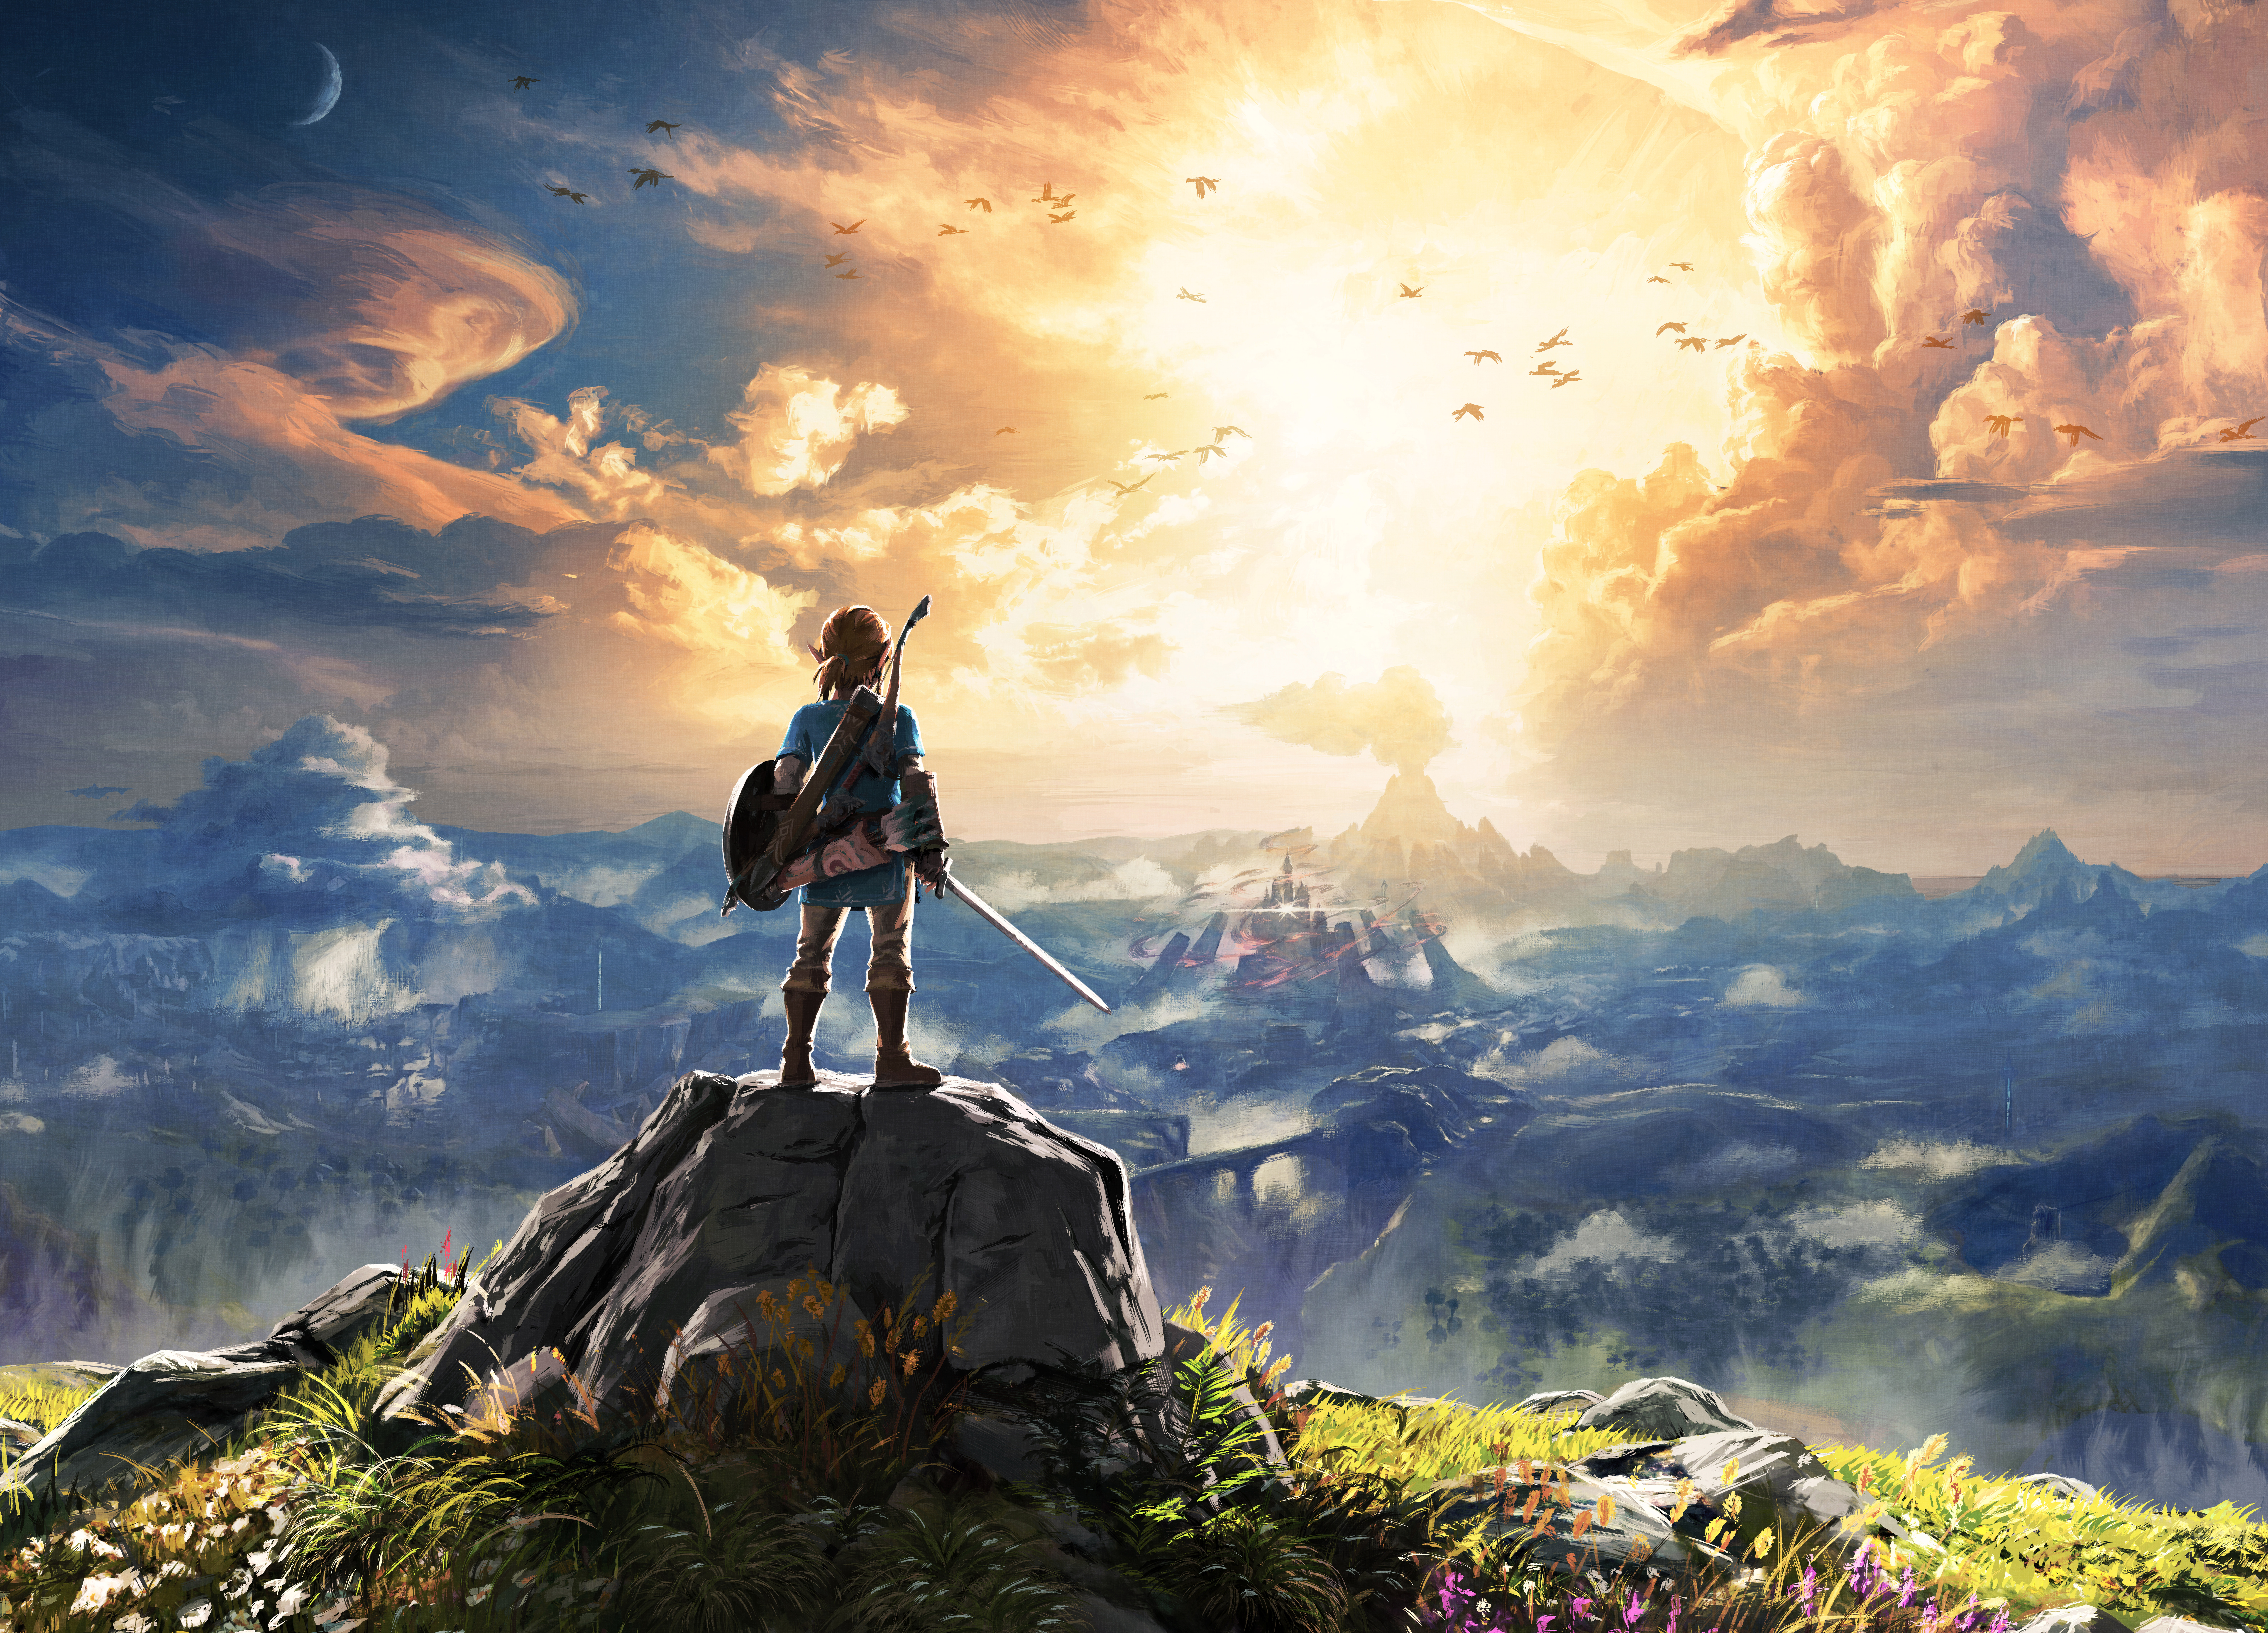 Link The Legend Of Zelda Breath Of The Wild 15000x10800